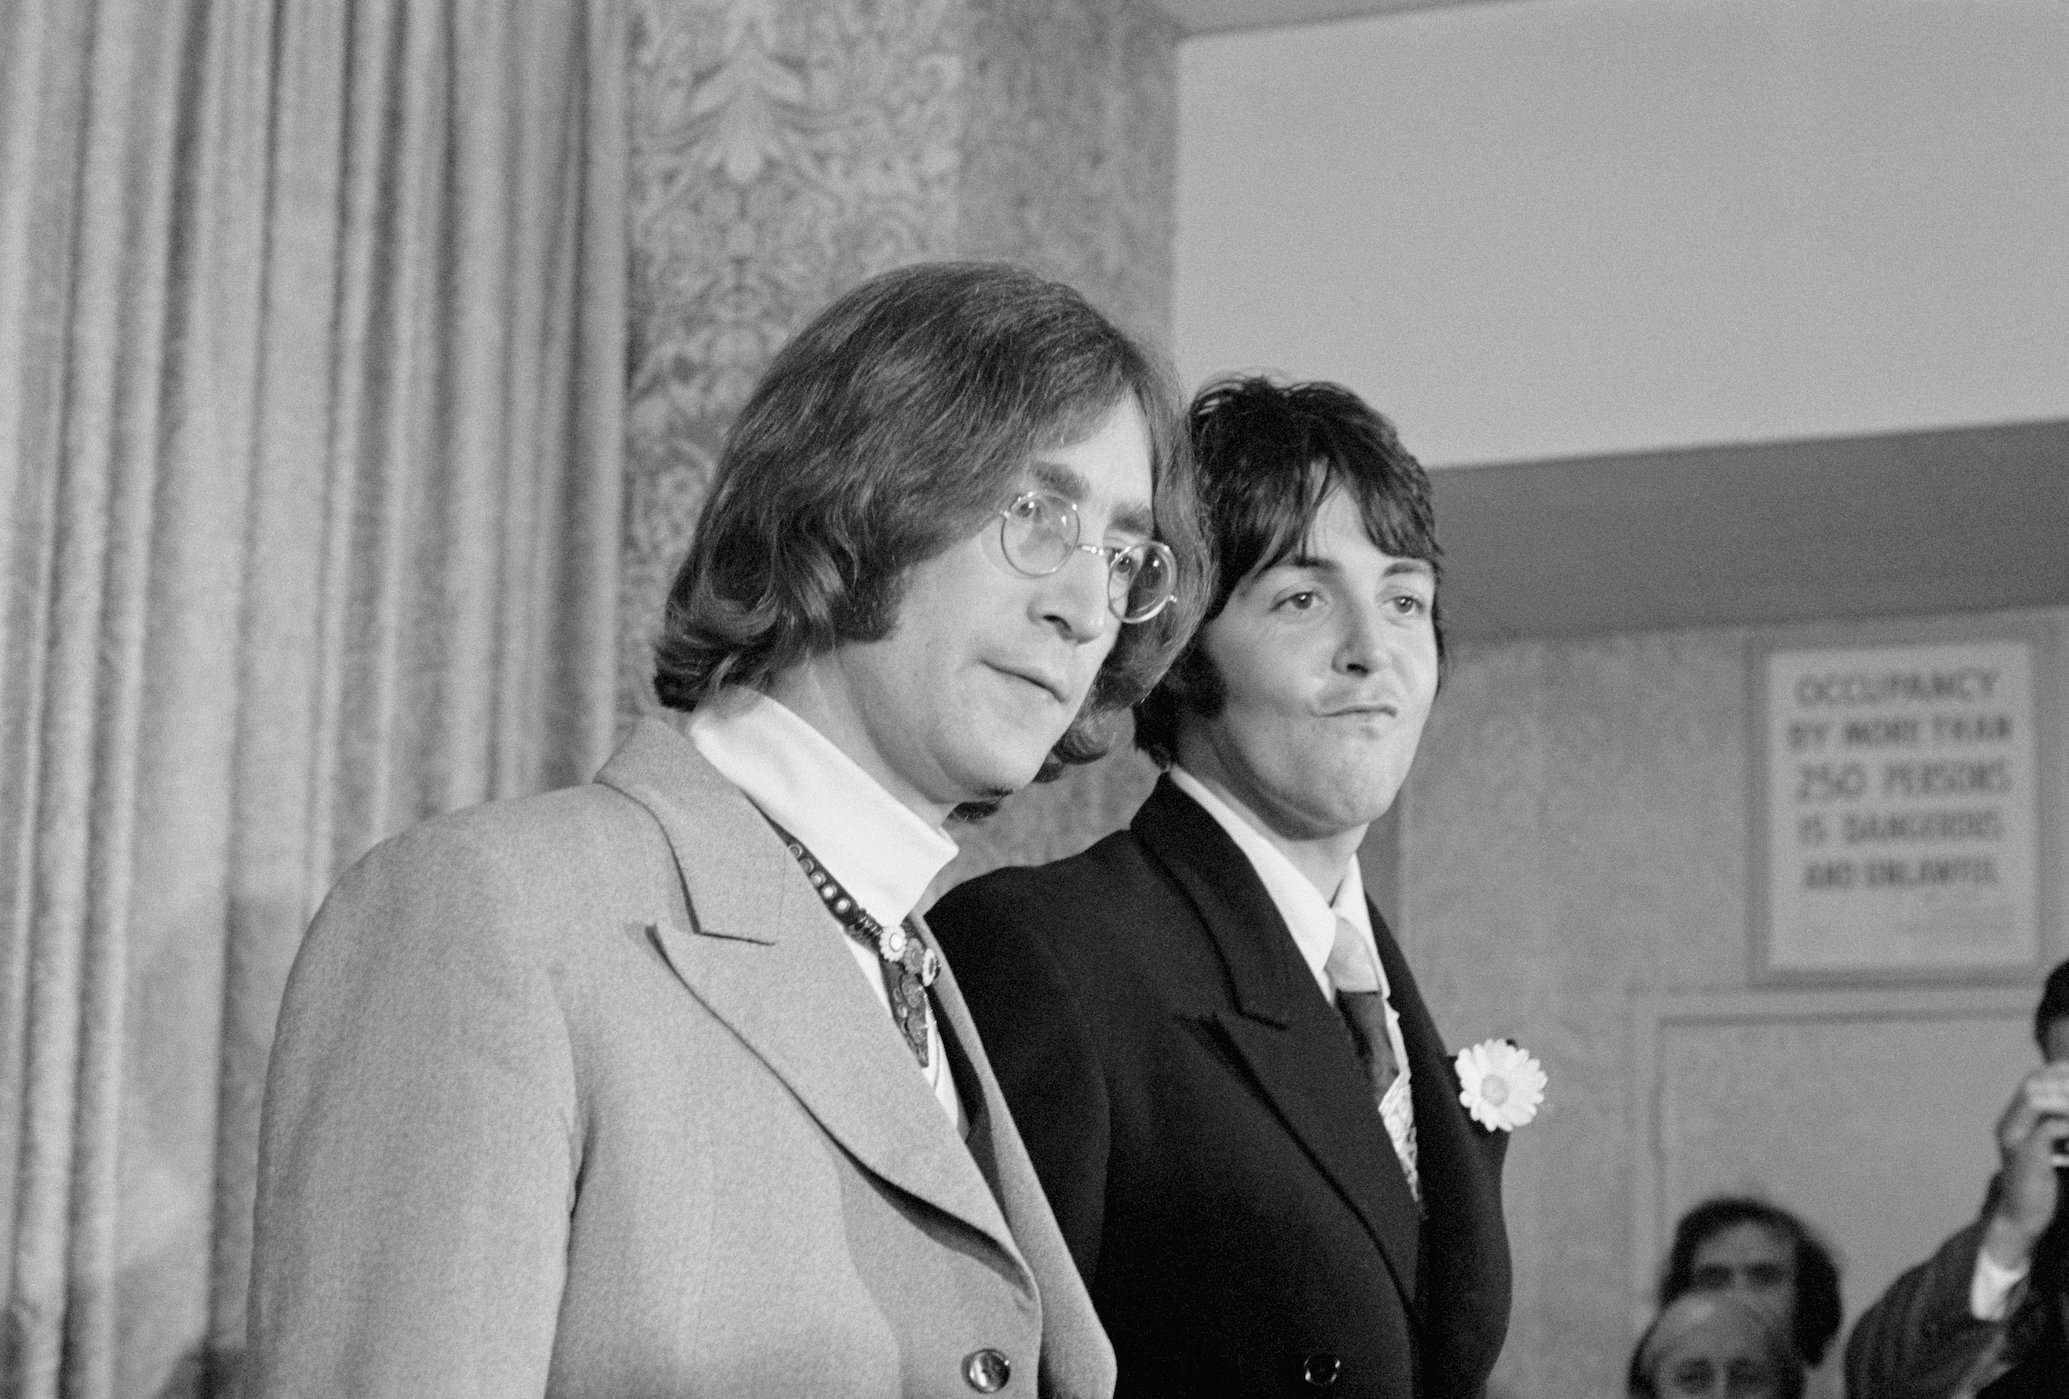 Paul McCartney compartilhou o que mais o impressionou em John Lennon quando se conheceram